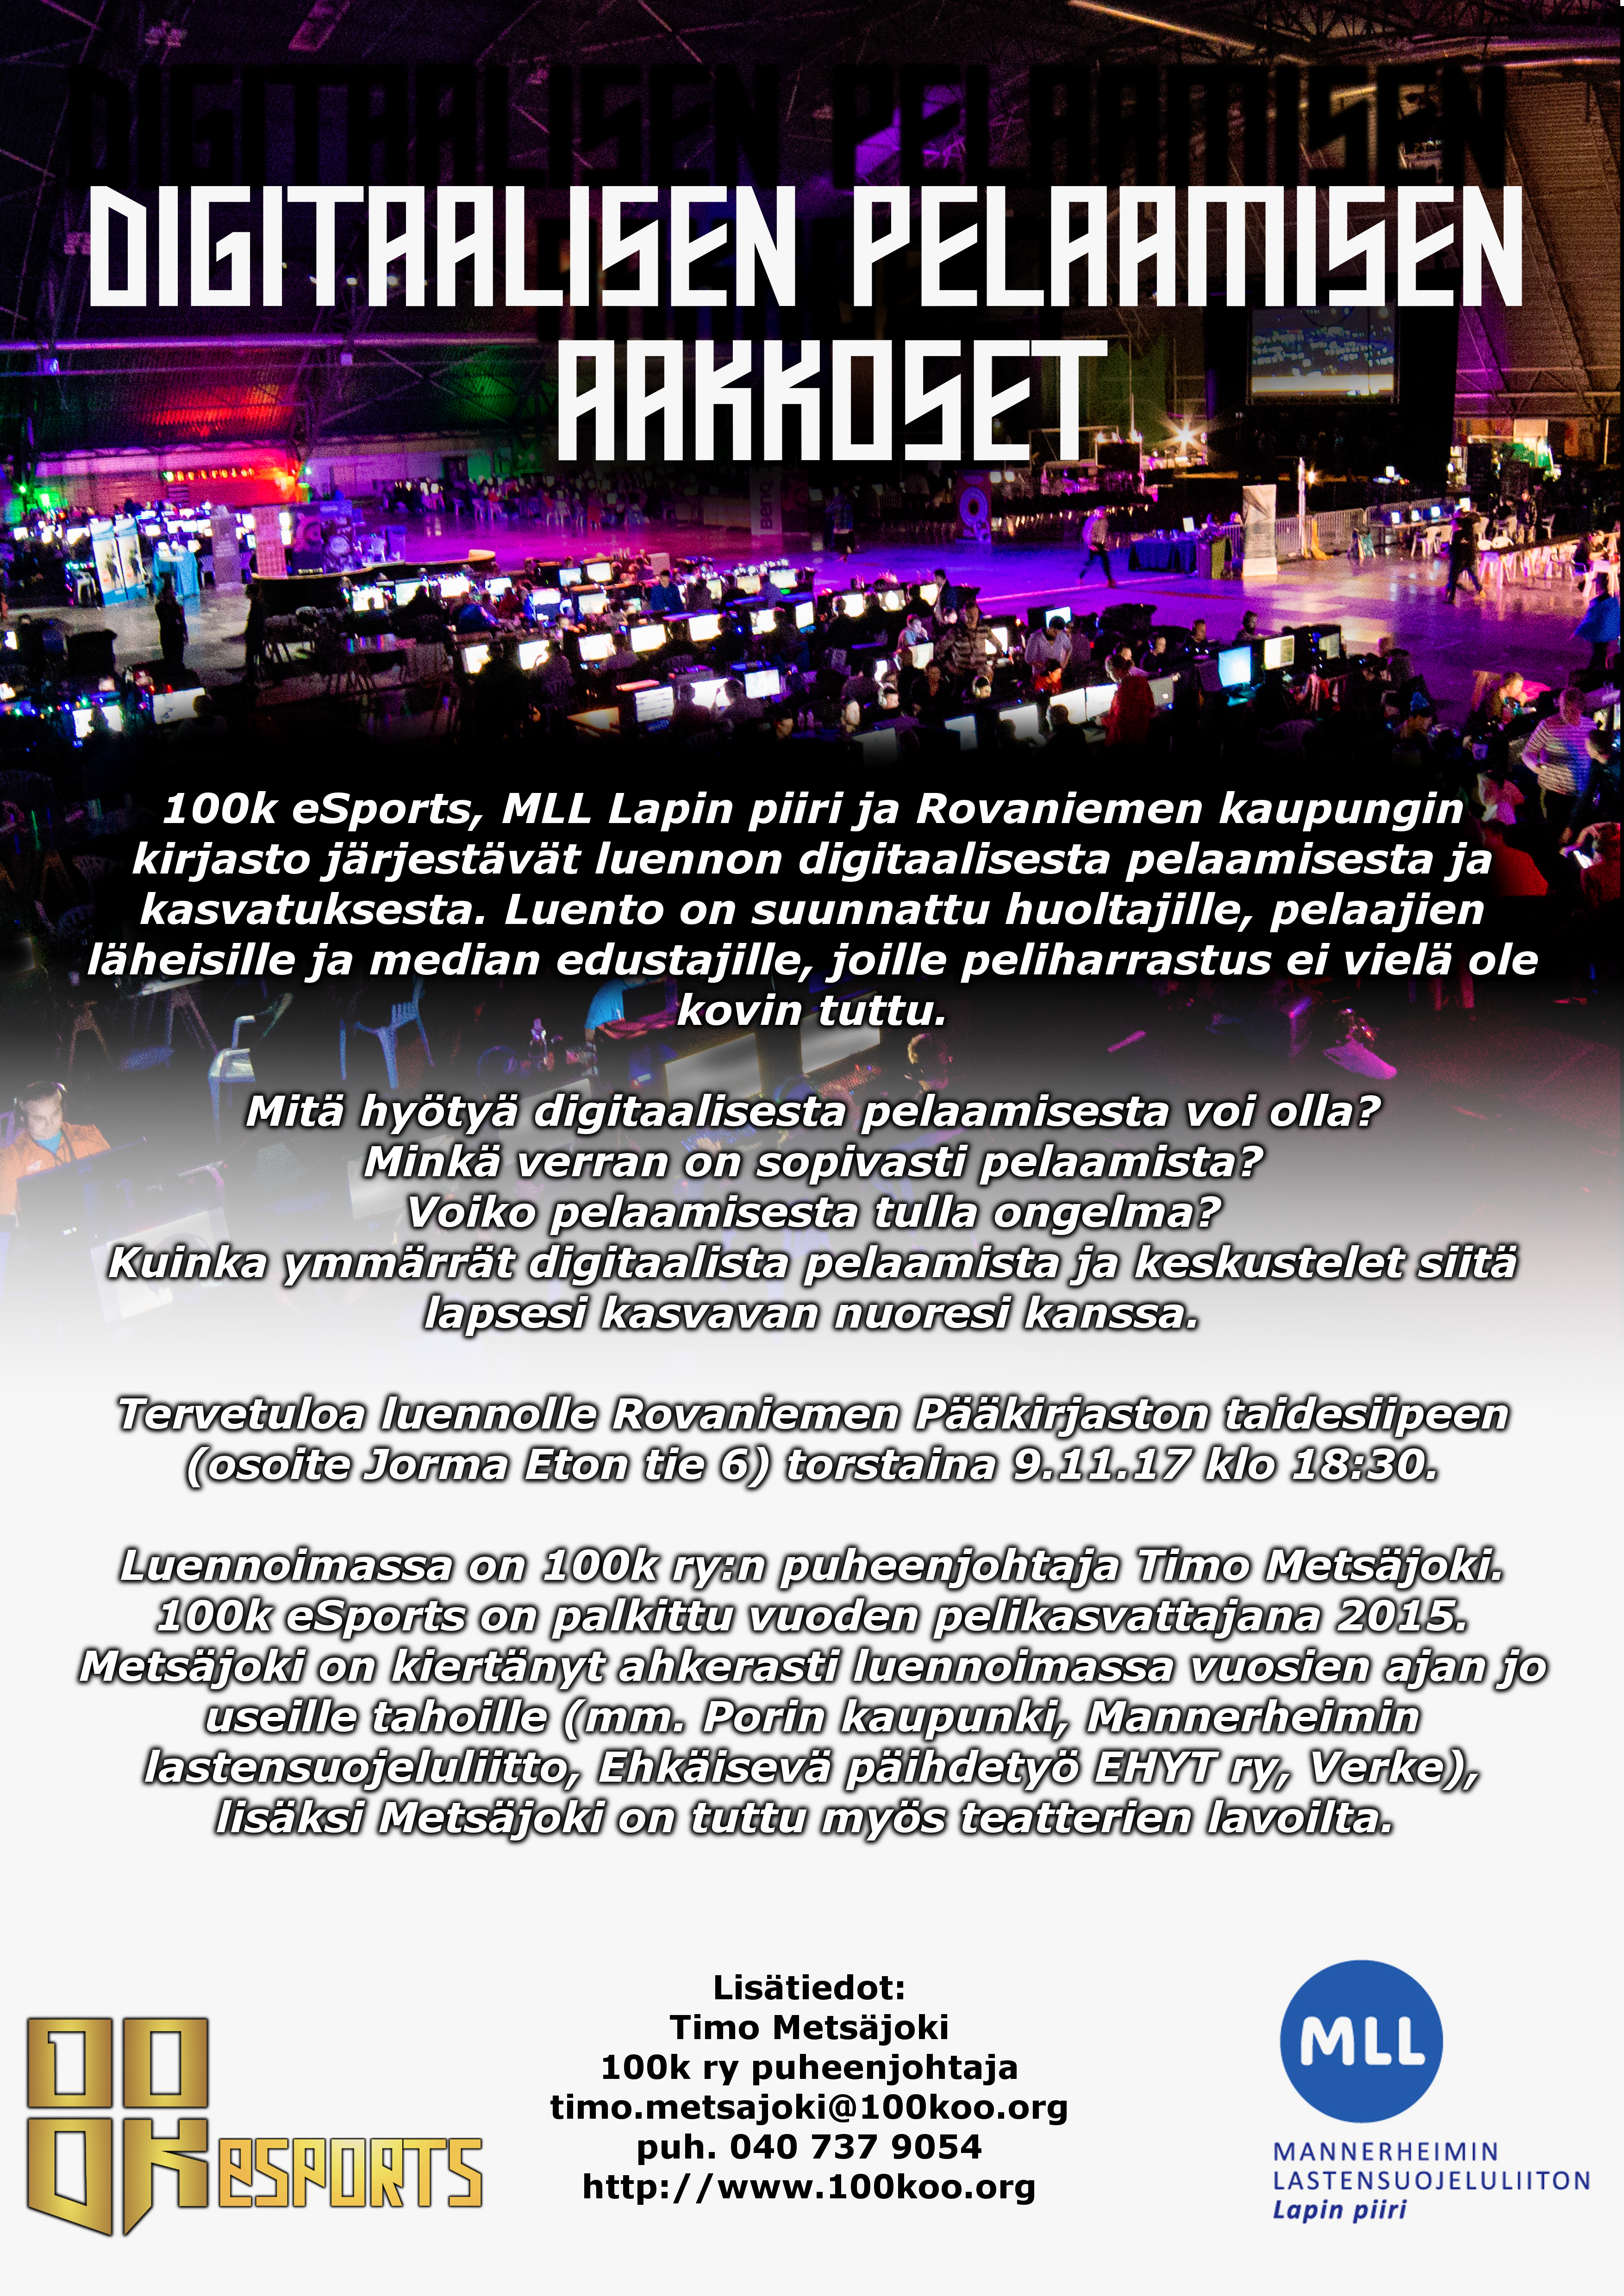 Digitaalisen pelaamisen aakkoset Rovaniemellä 9.11.2017